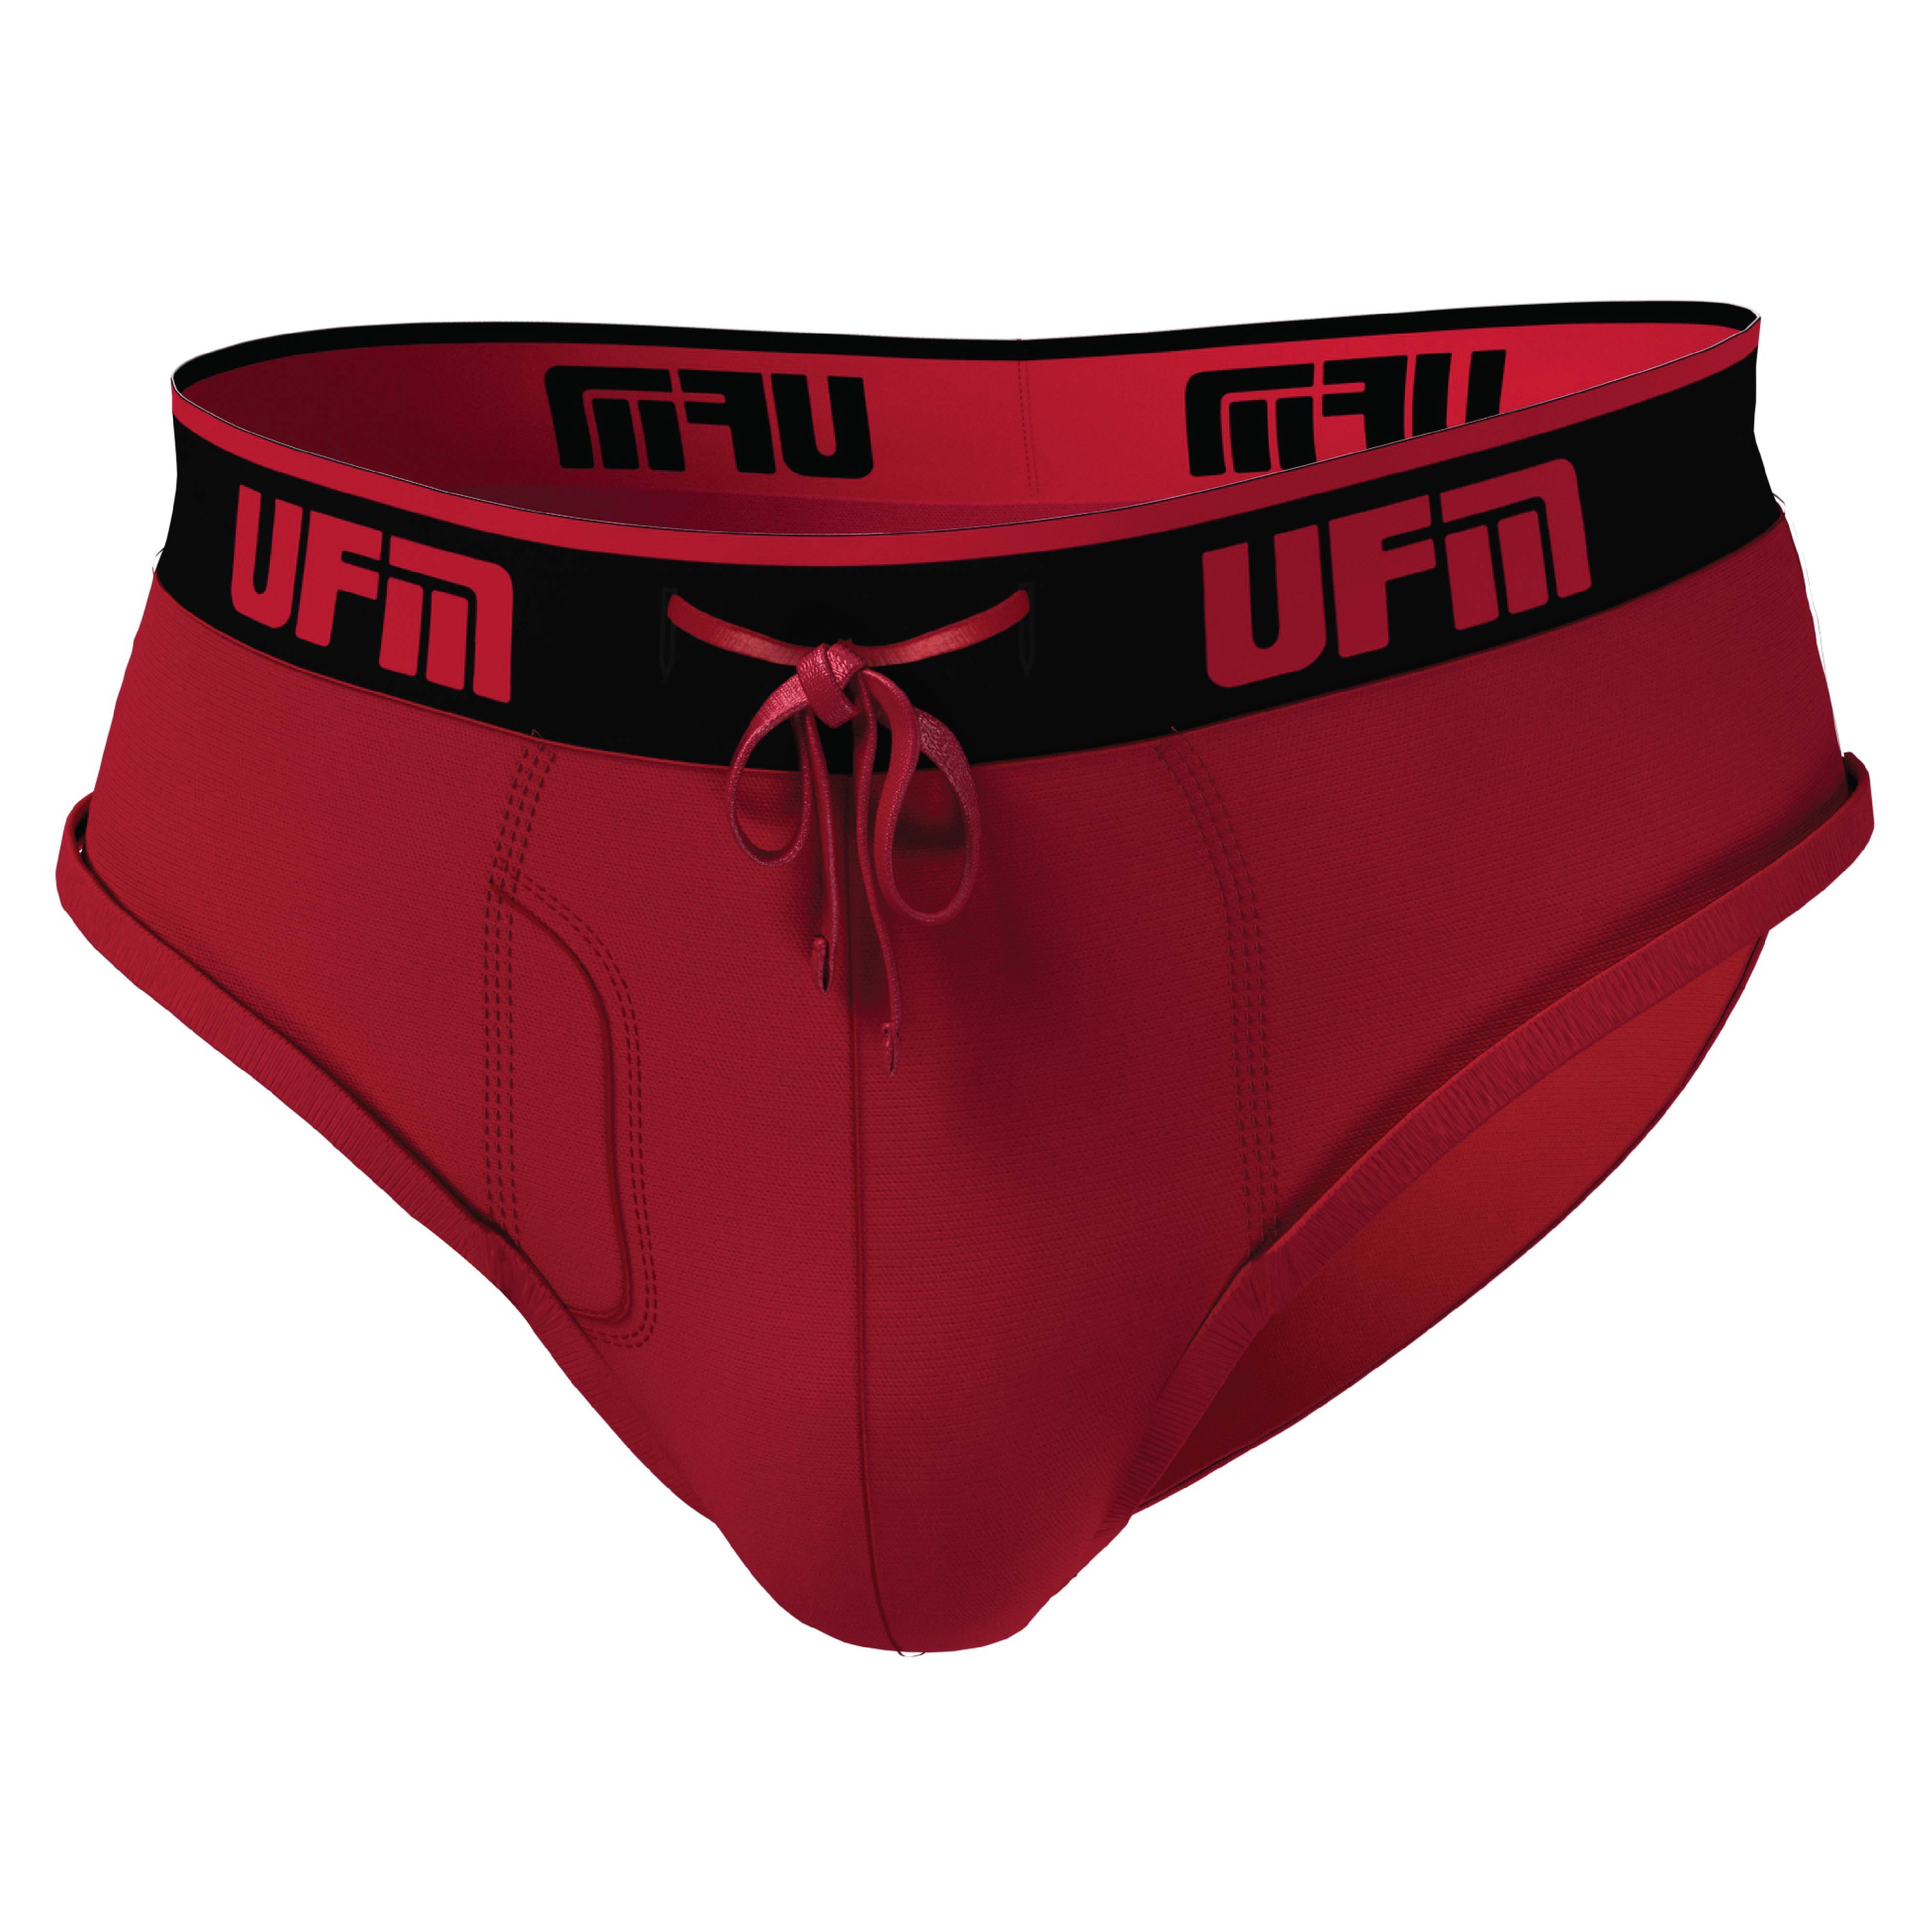 UFM Mens Underwear, Polyester-Spandex Mens Briefs, Regular and Adjustable  Support Pouch Men Underwear, 48-50 waist, Black 